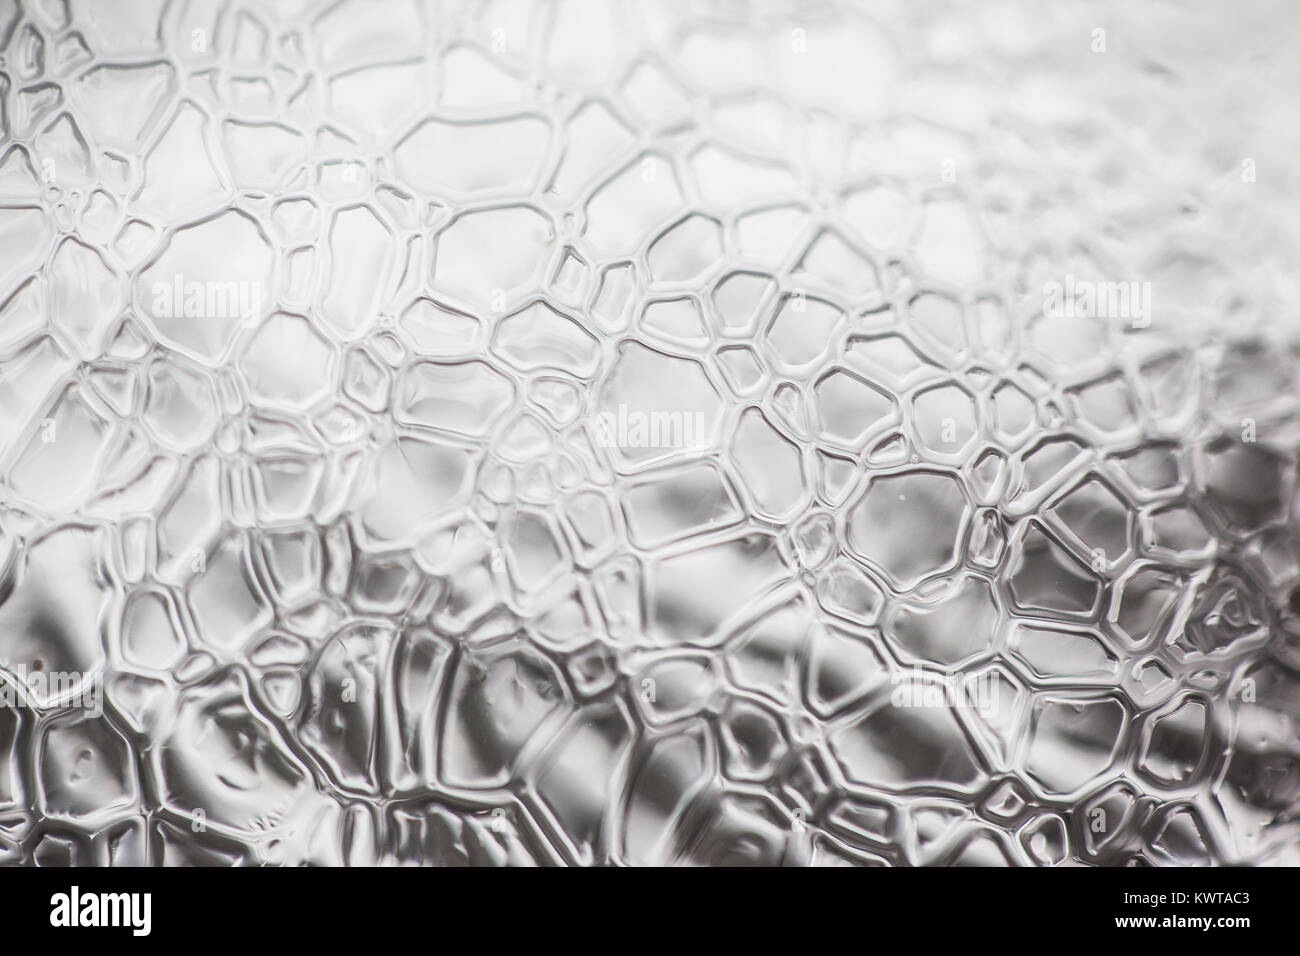 Abstract intricate chiudere i pattern su un pezzo di ghiaccio. Foto Stock